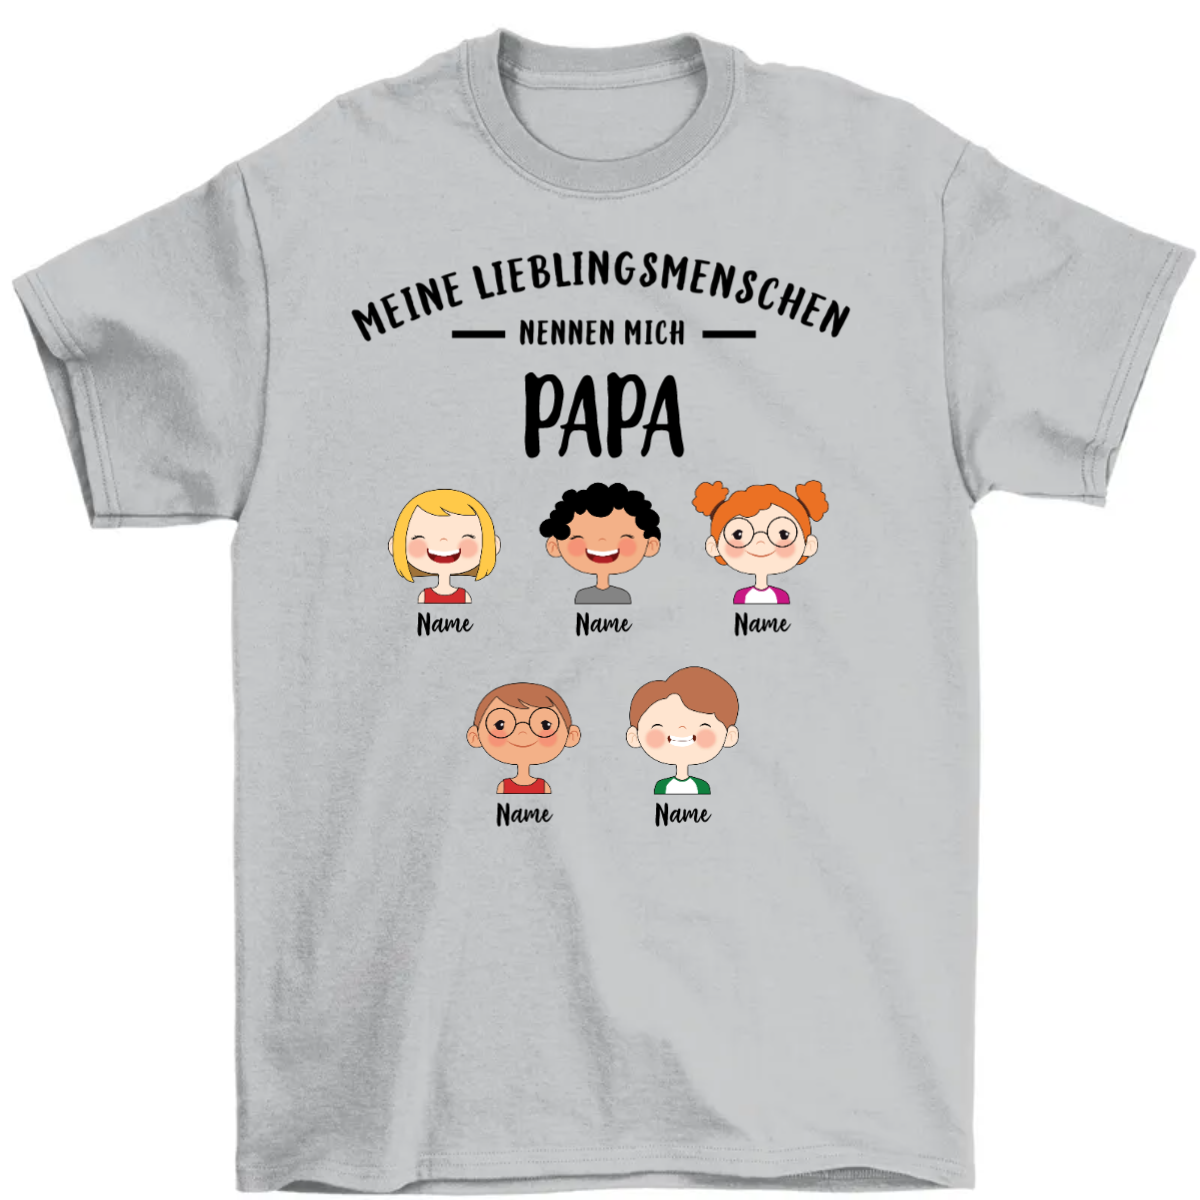 Meine Lieblingsmenschen nennen mich Papa Opa süßes Kind Personalisiertes シャツ